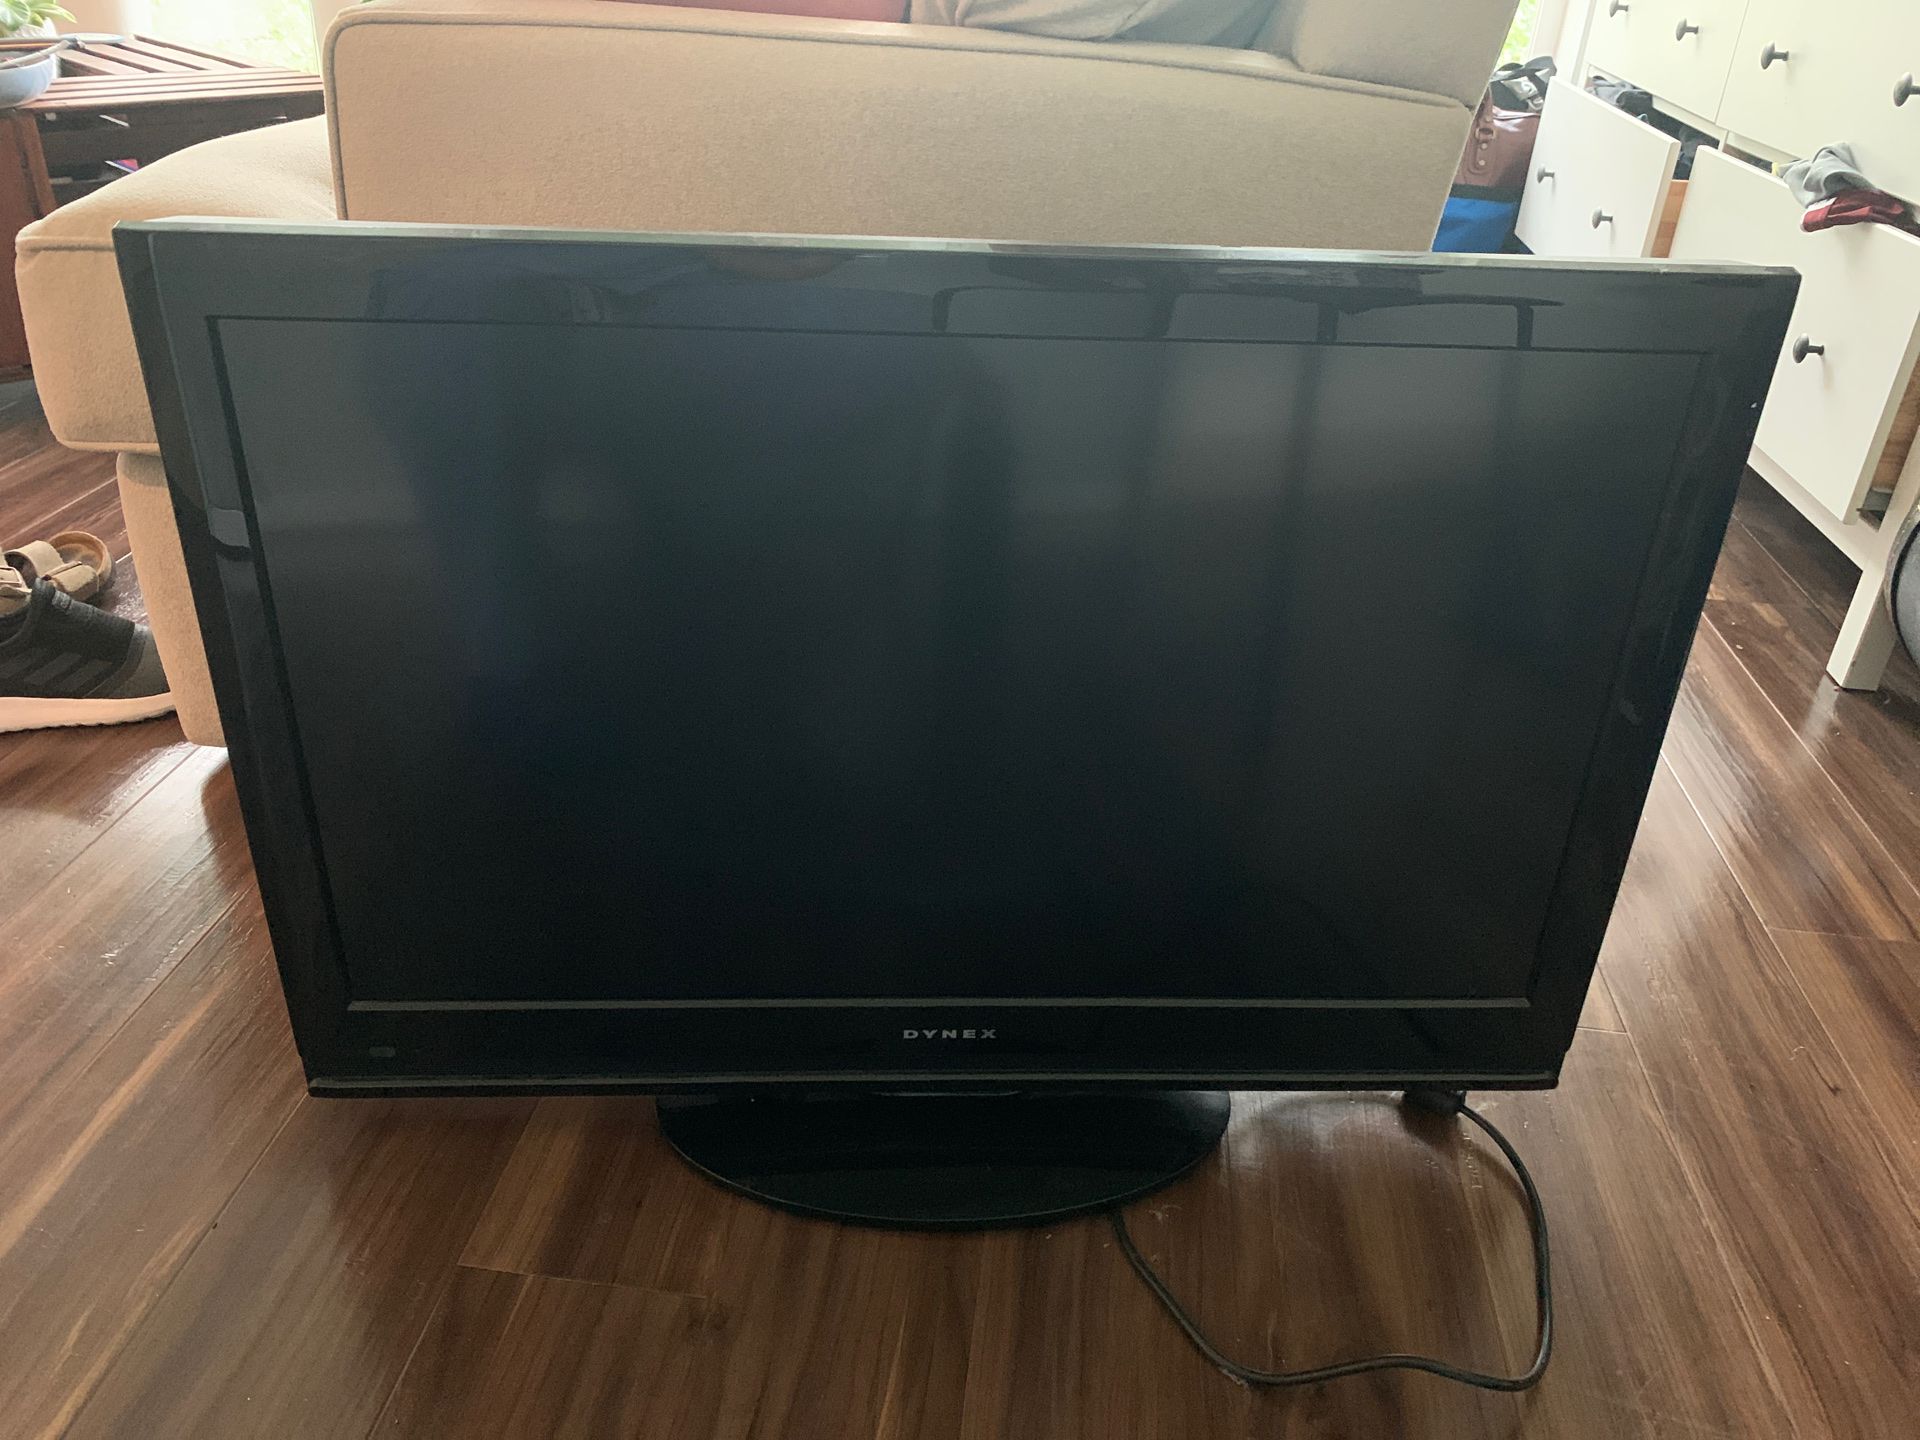 Dynex 32 inch TV